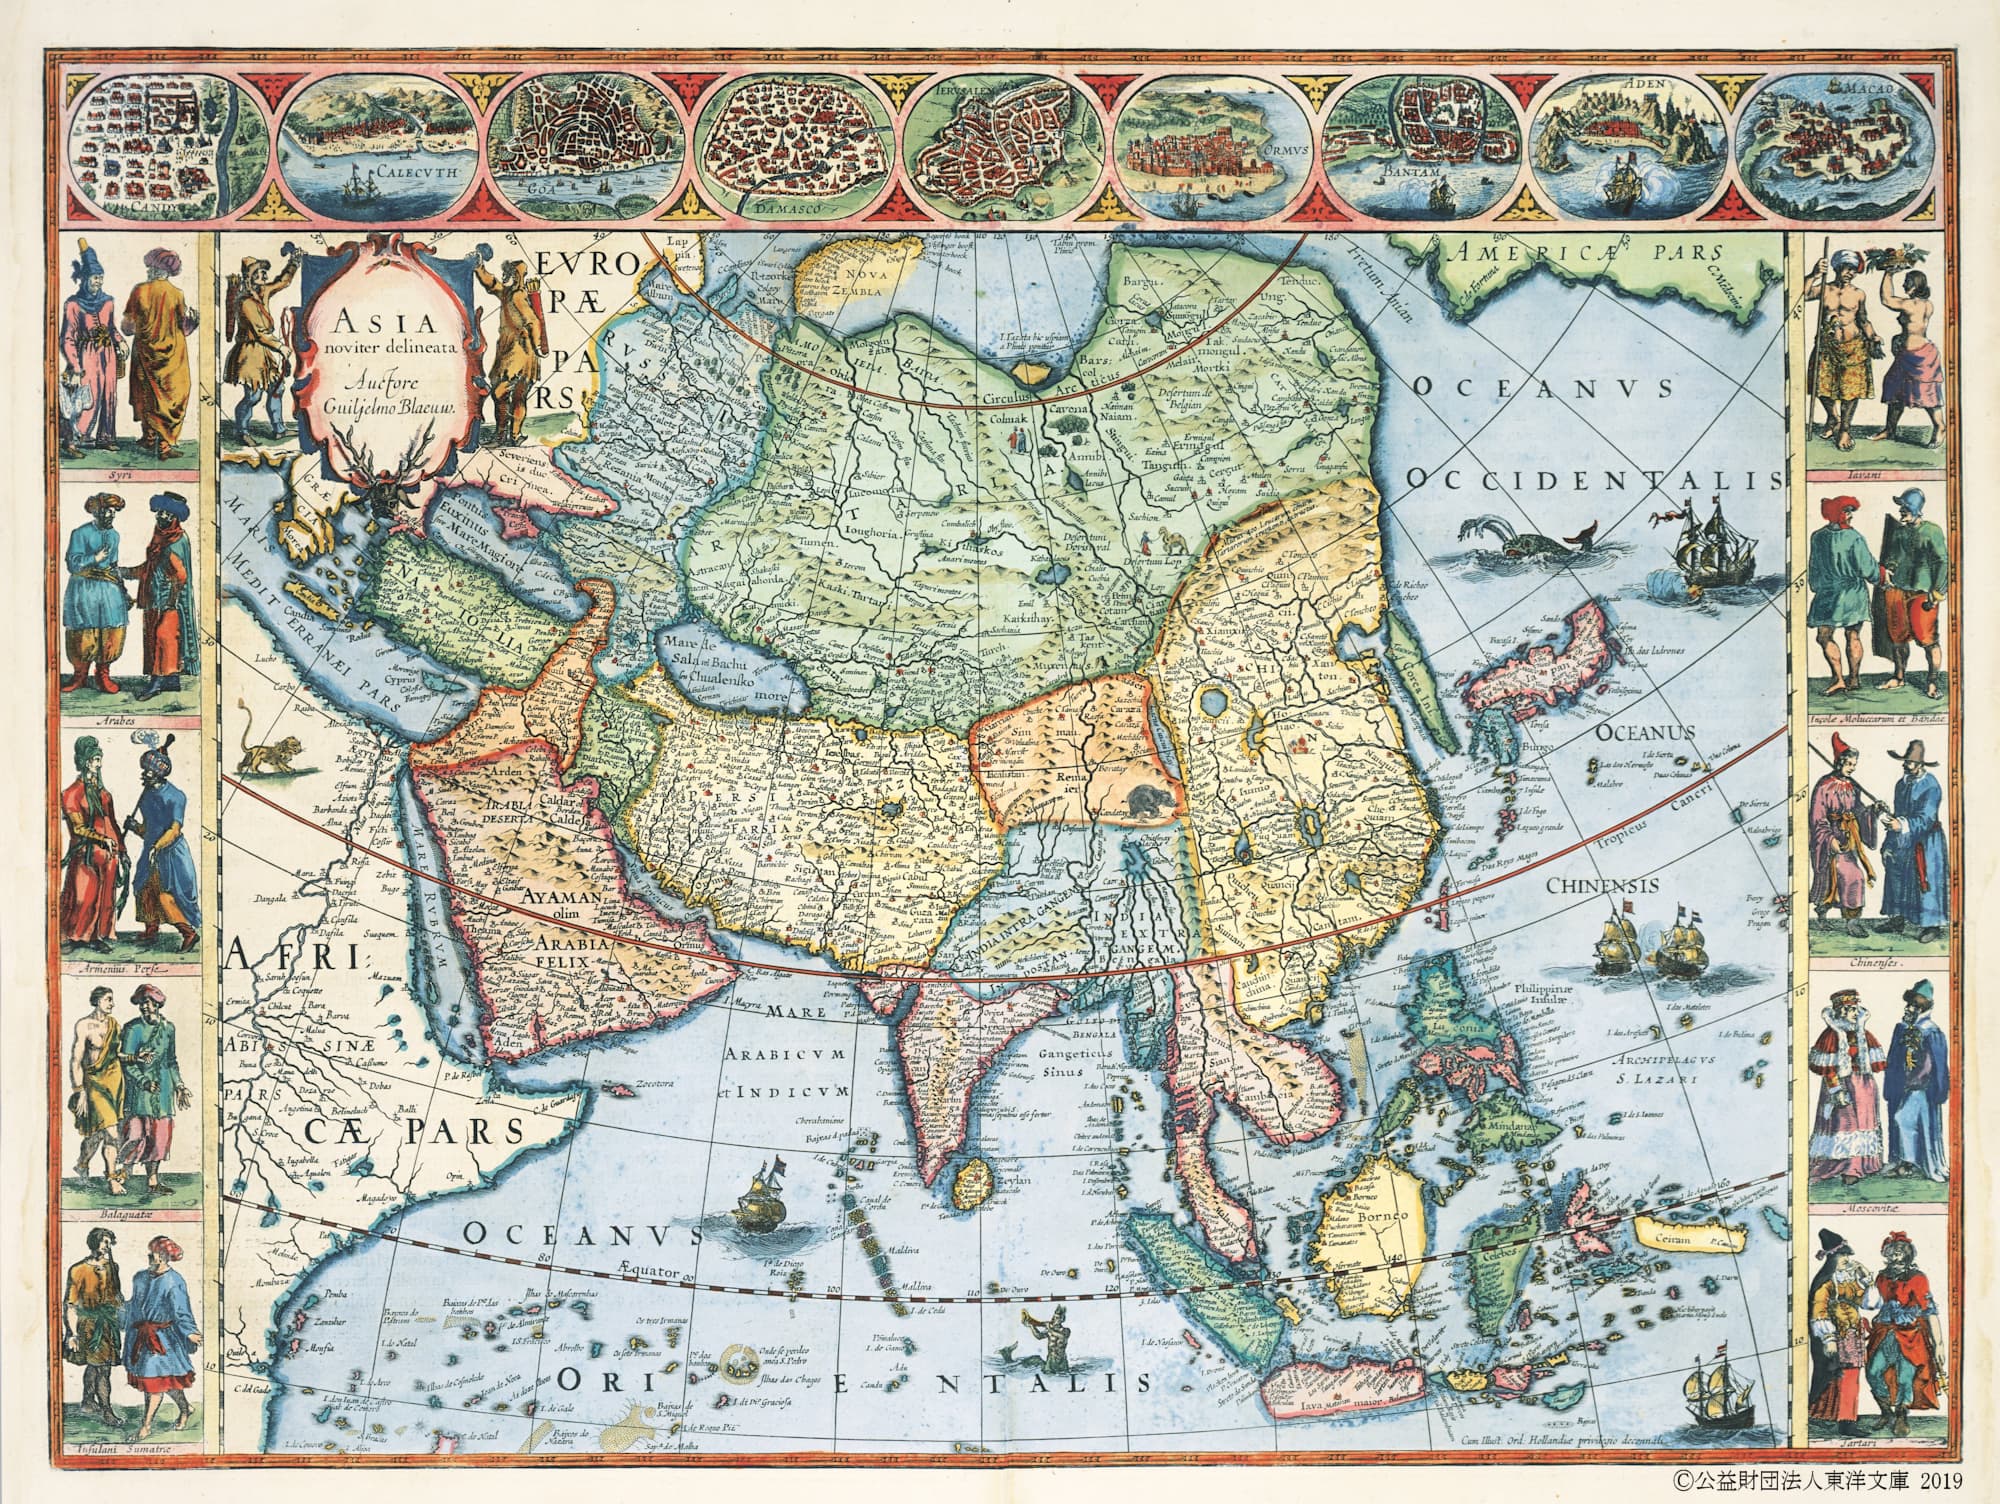 出島のオランダ人もこの地図を持っていた 見る読む解く 古地図の世界 J Cast ニュース